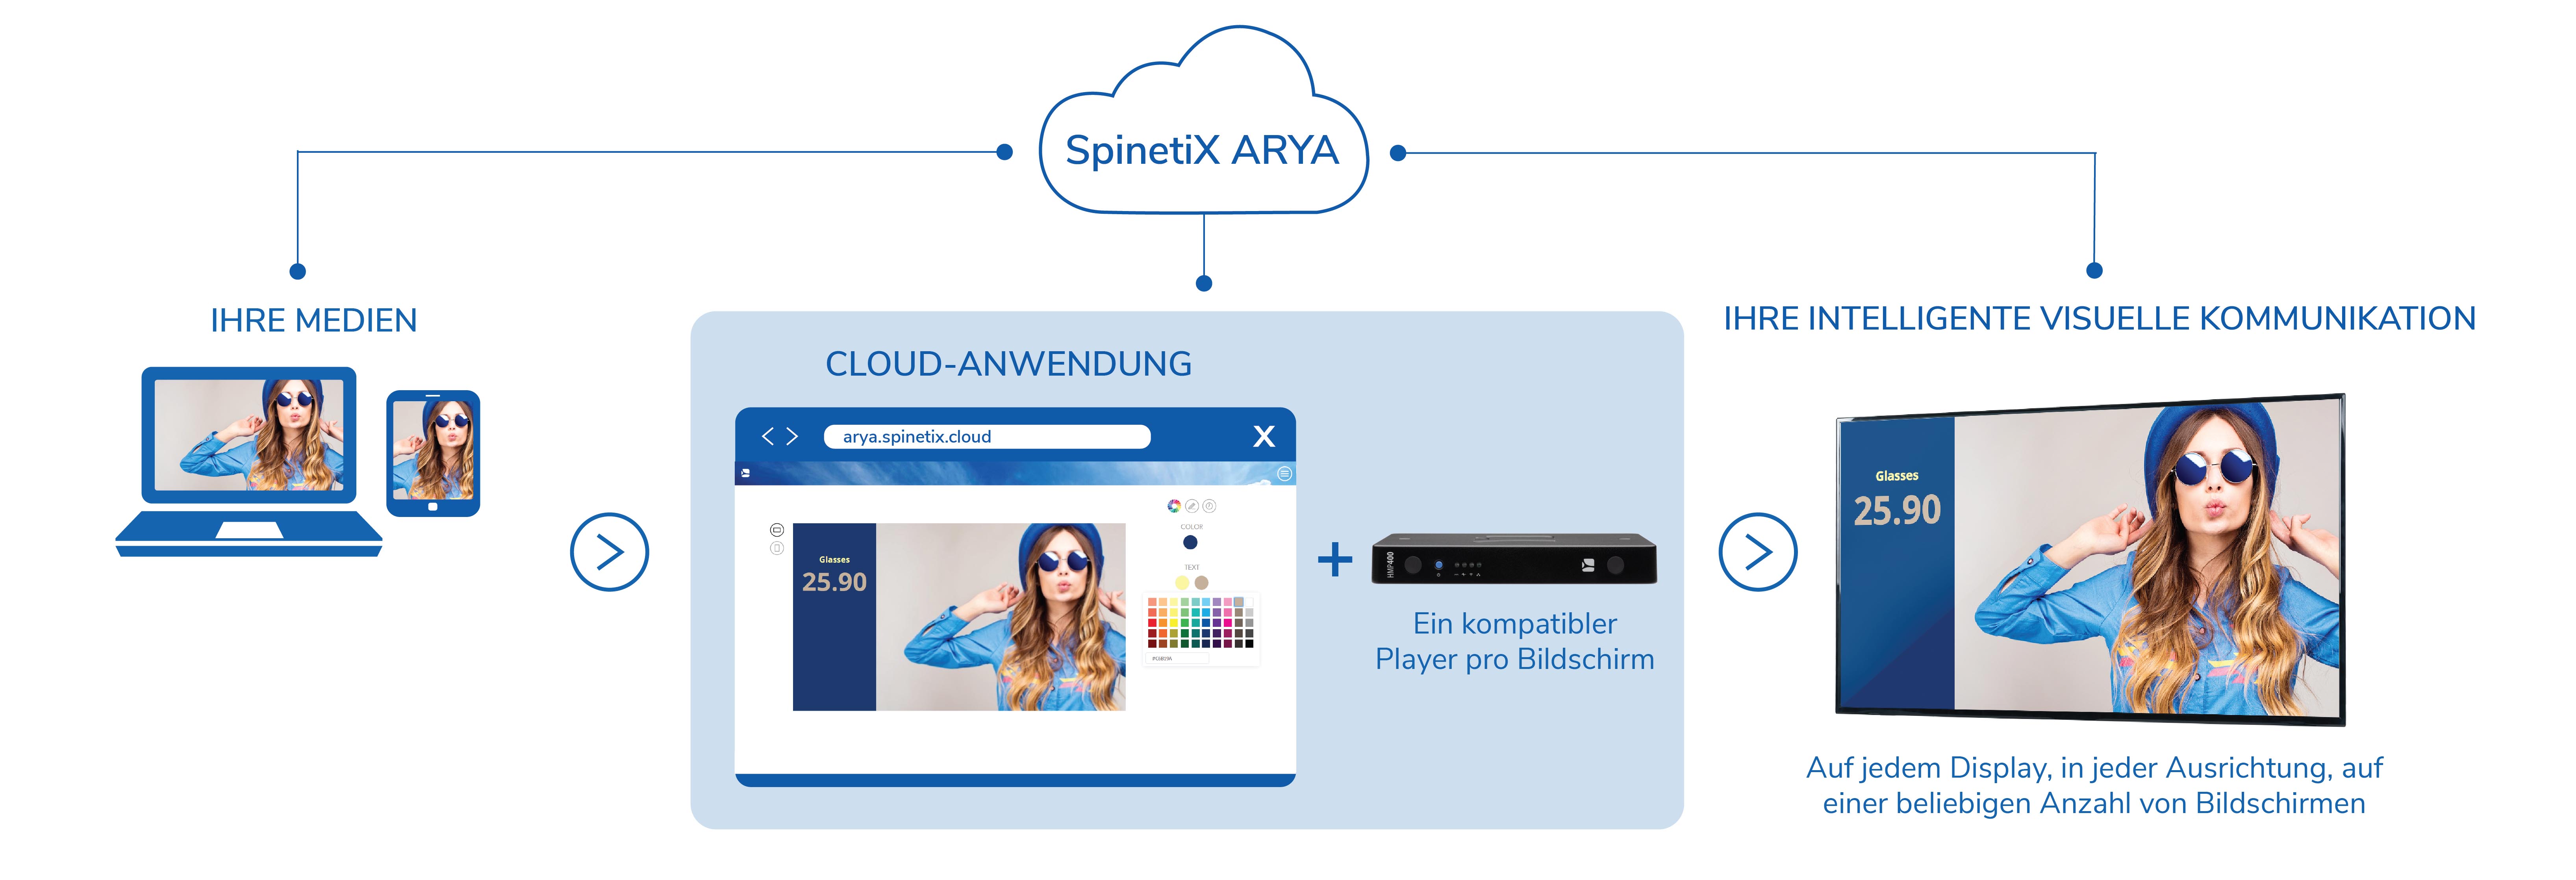 Infografik mit den ersten Schritten der Cloud-basierten Digital Signage-Lösung von spinetix arya